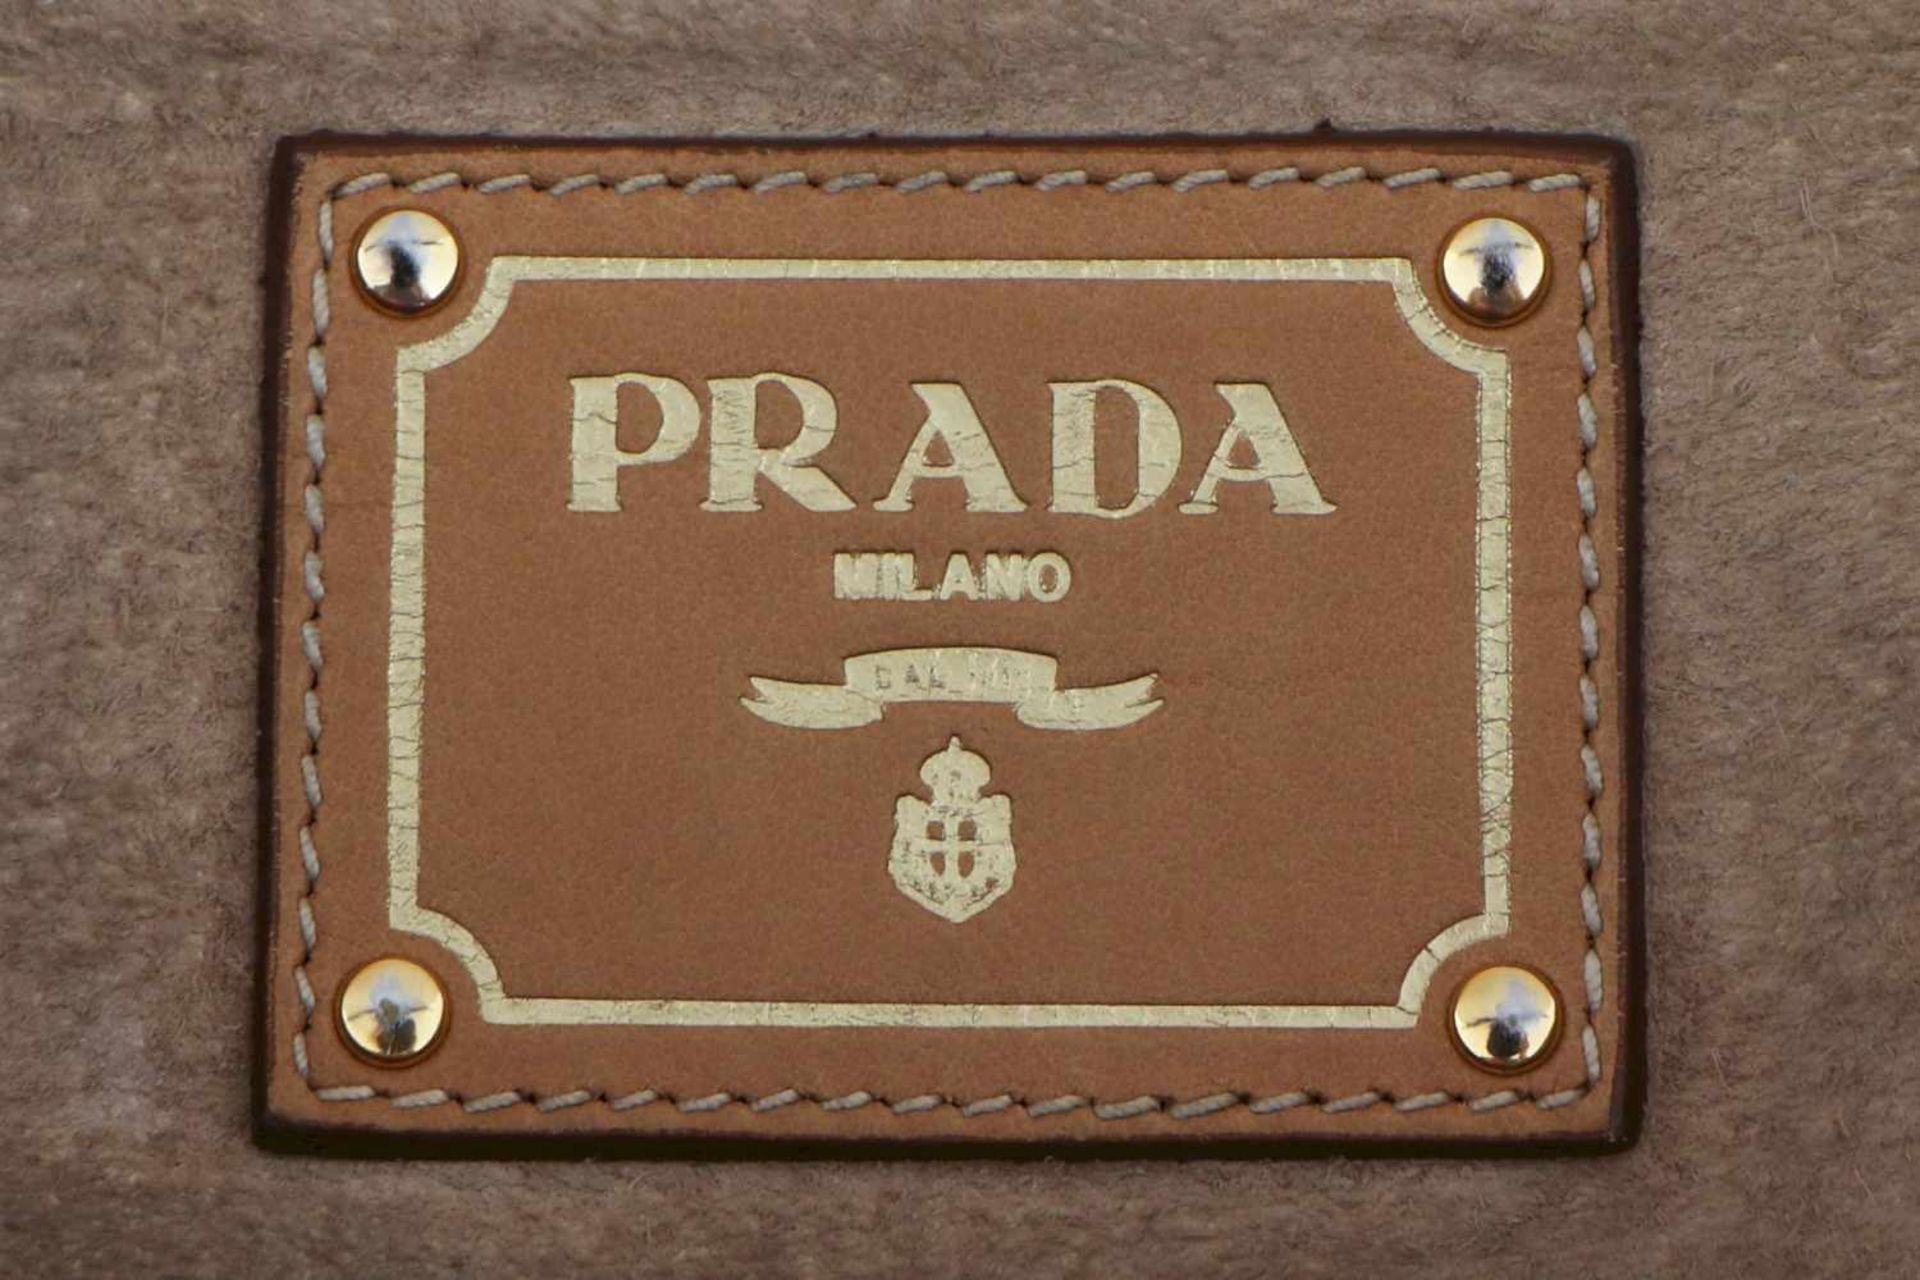 PRADA Handtasche hellbeiges Leder, Kuvertform, 2 Trageriemen, vergoldeter Prada-Schriftzug auf der - Image 3 of 4